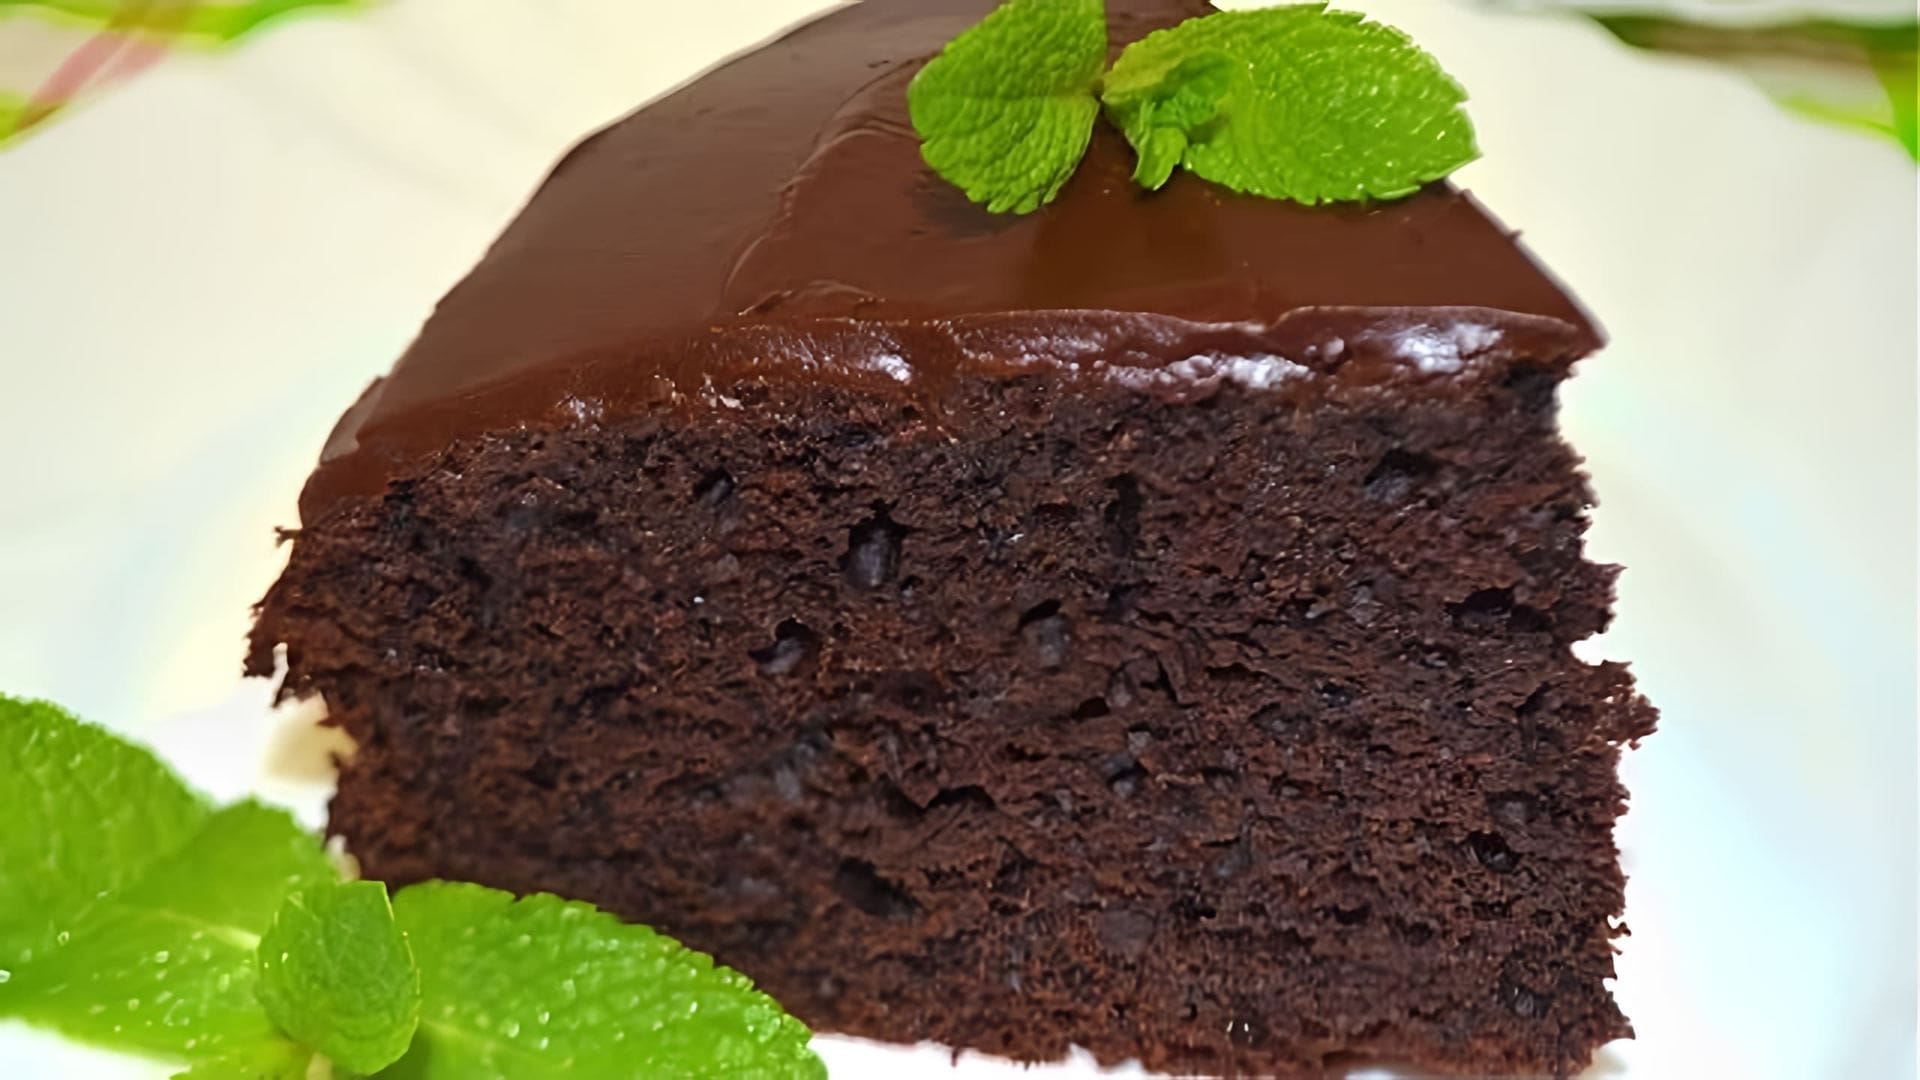 В этом видео демонстрируется рецепт брауни - шоколадного десерта, который считается одним из самых вкусных и простых в приготовлении